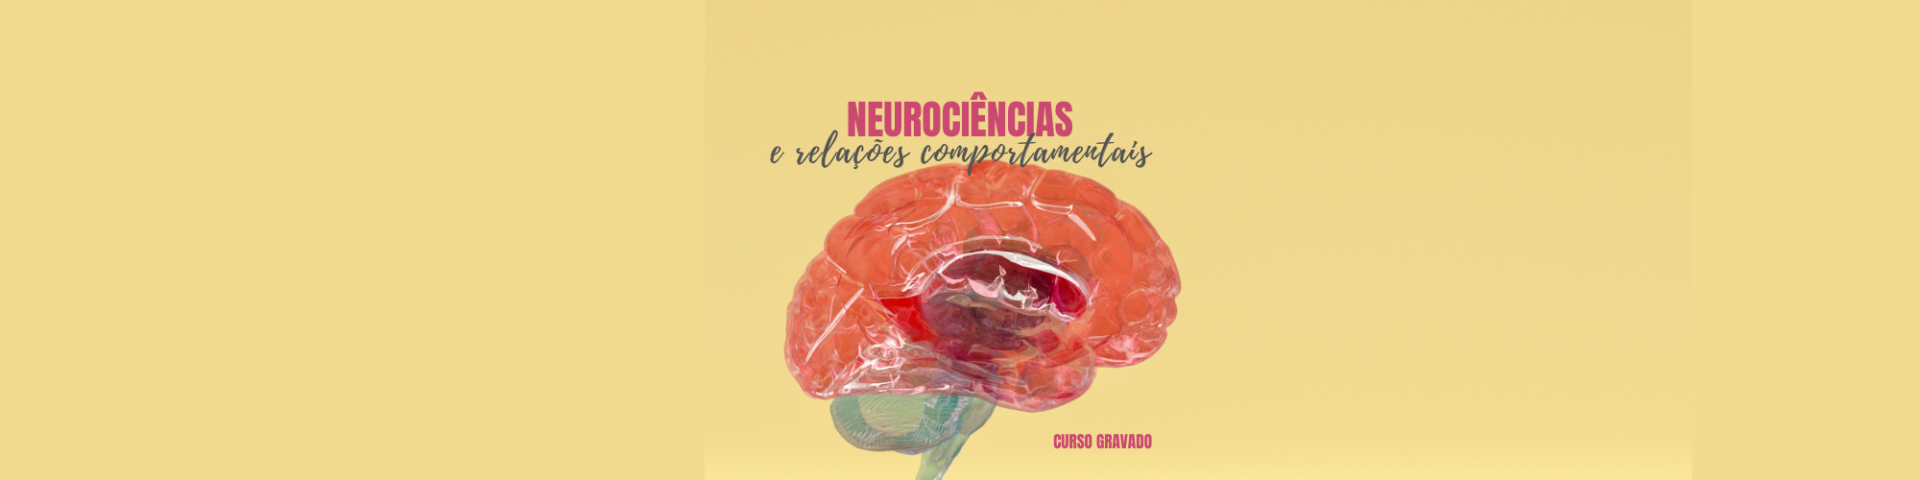 Neurociências e relações comportamentais